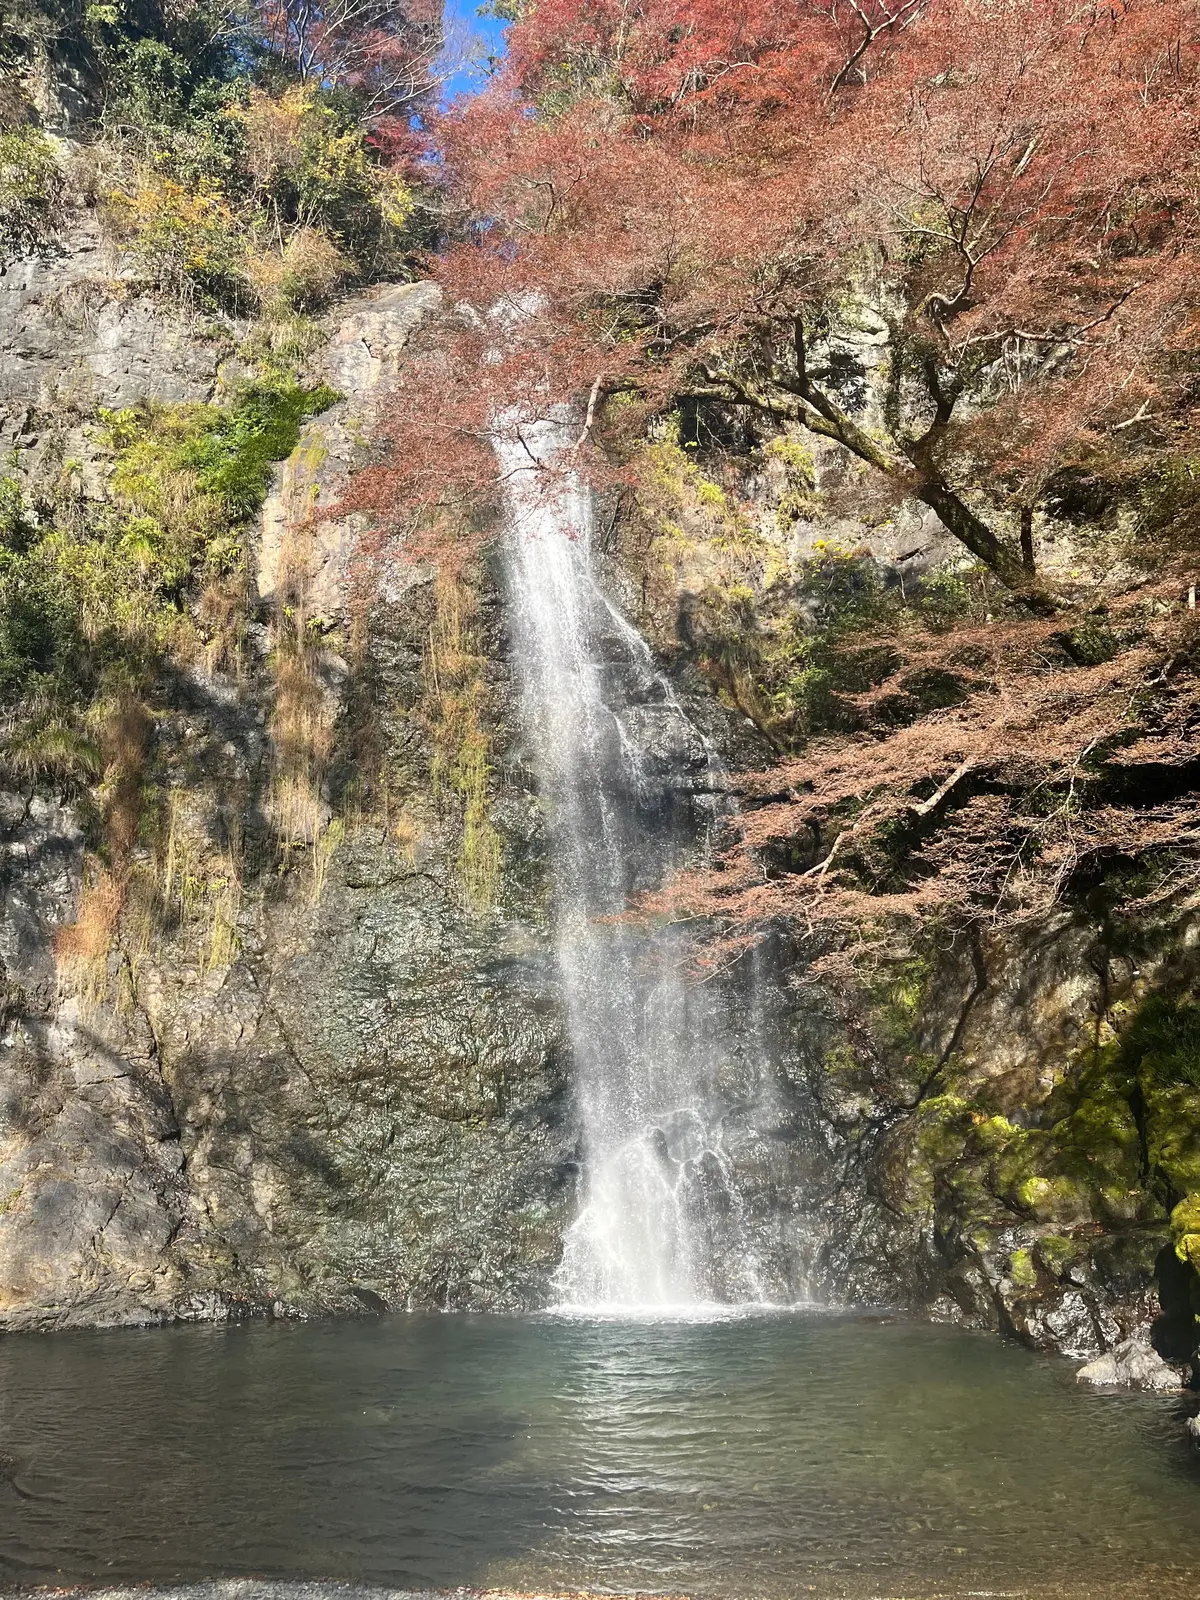 【大阪】今が見ごろ!ハイキングで楽しむ紅の画像_4